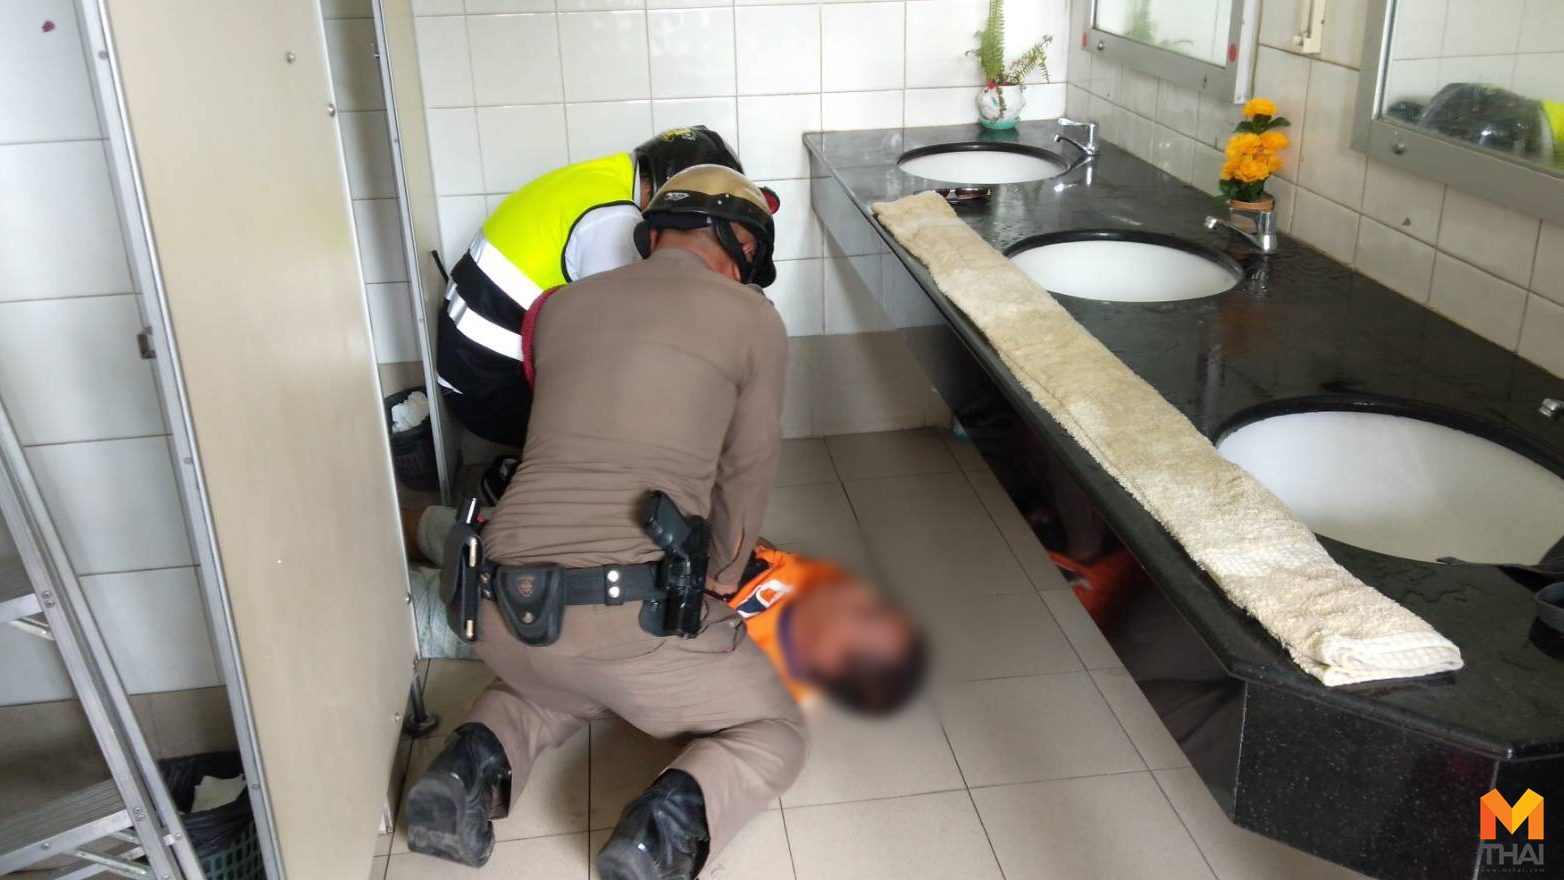 ชื่นชม!! ตำรวจเมืองพัทยา ปั้มหัวใจช่วยชีวิตคนหมดสติในห้องน้ำ